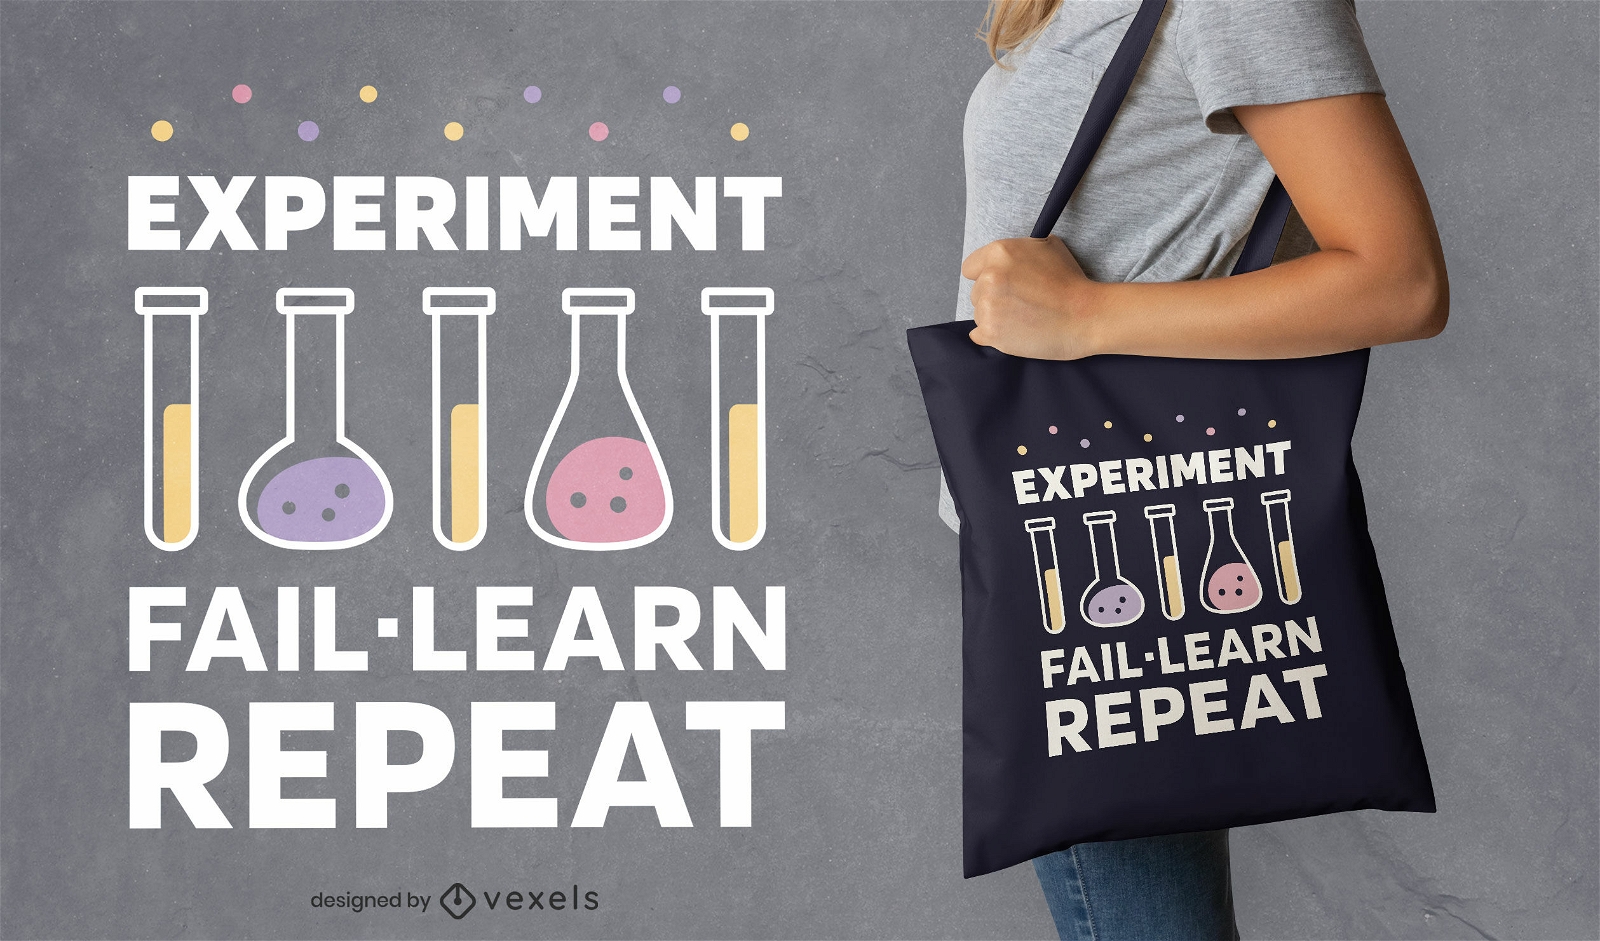 Taschendesign für wissenschaftliche Experimente